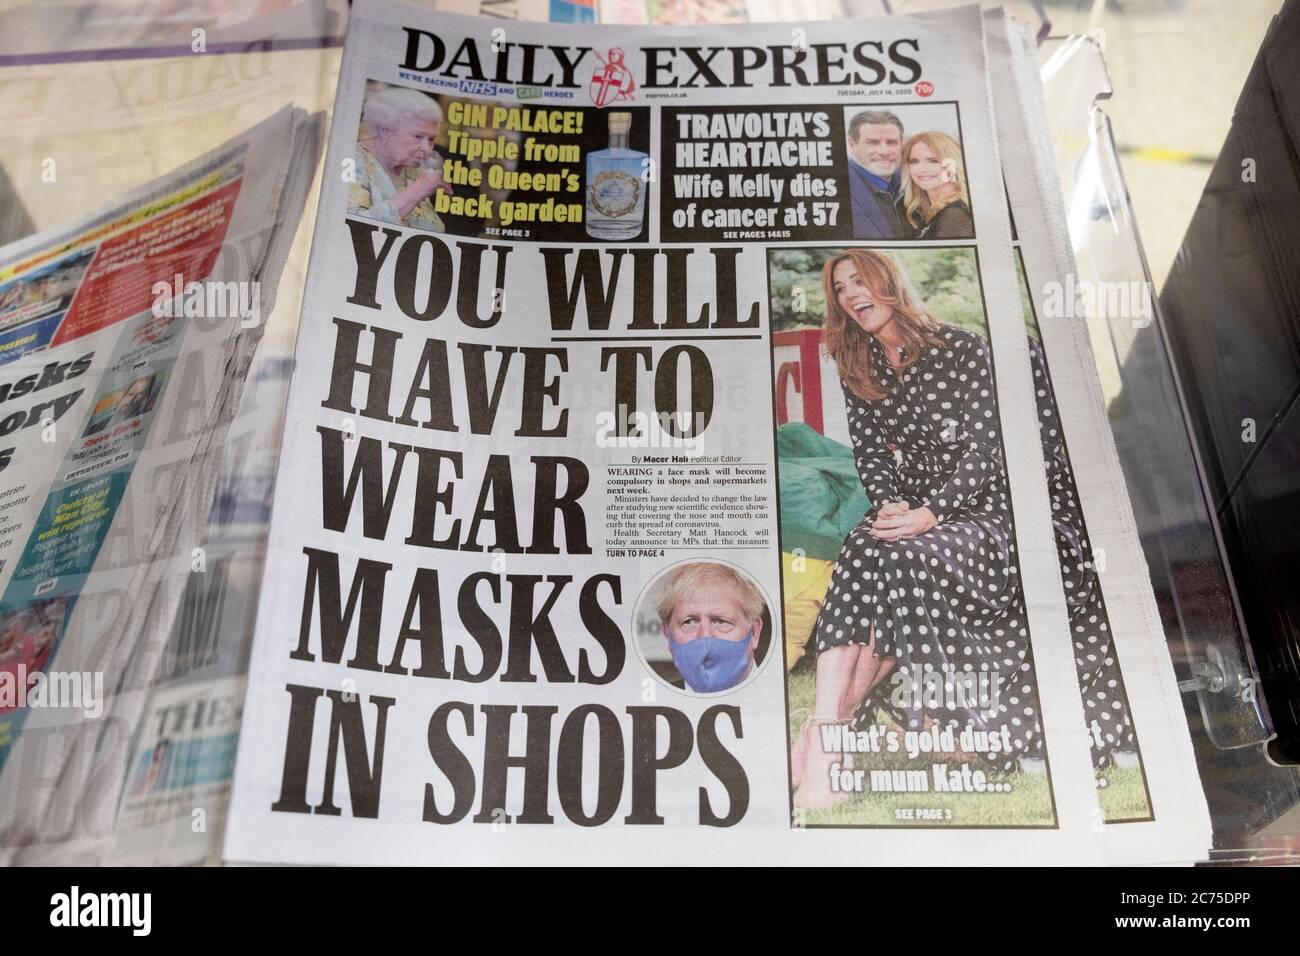 "SIE MÜSSEN MASKEN IN GESCHÄFTEN tragen" Maske erforderlicher Artikel in Daily Express Zeitung Überschrift Titelseite am 14. Juli 2020 in London England Großbritannien Stockfoto